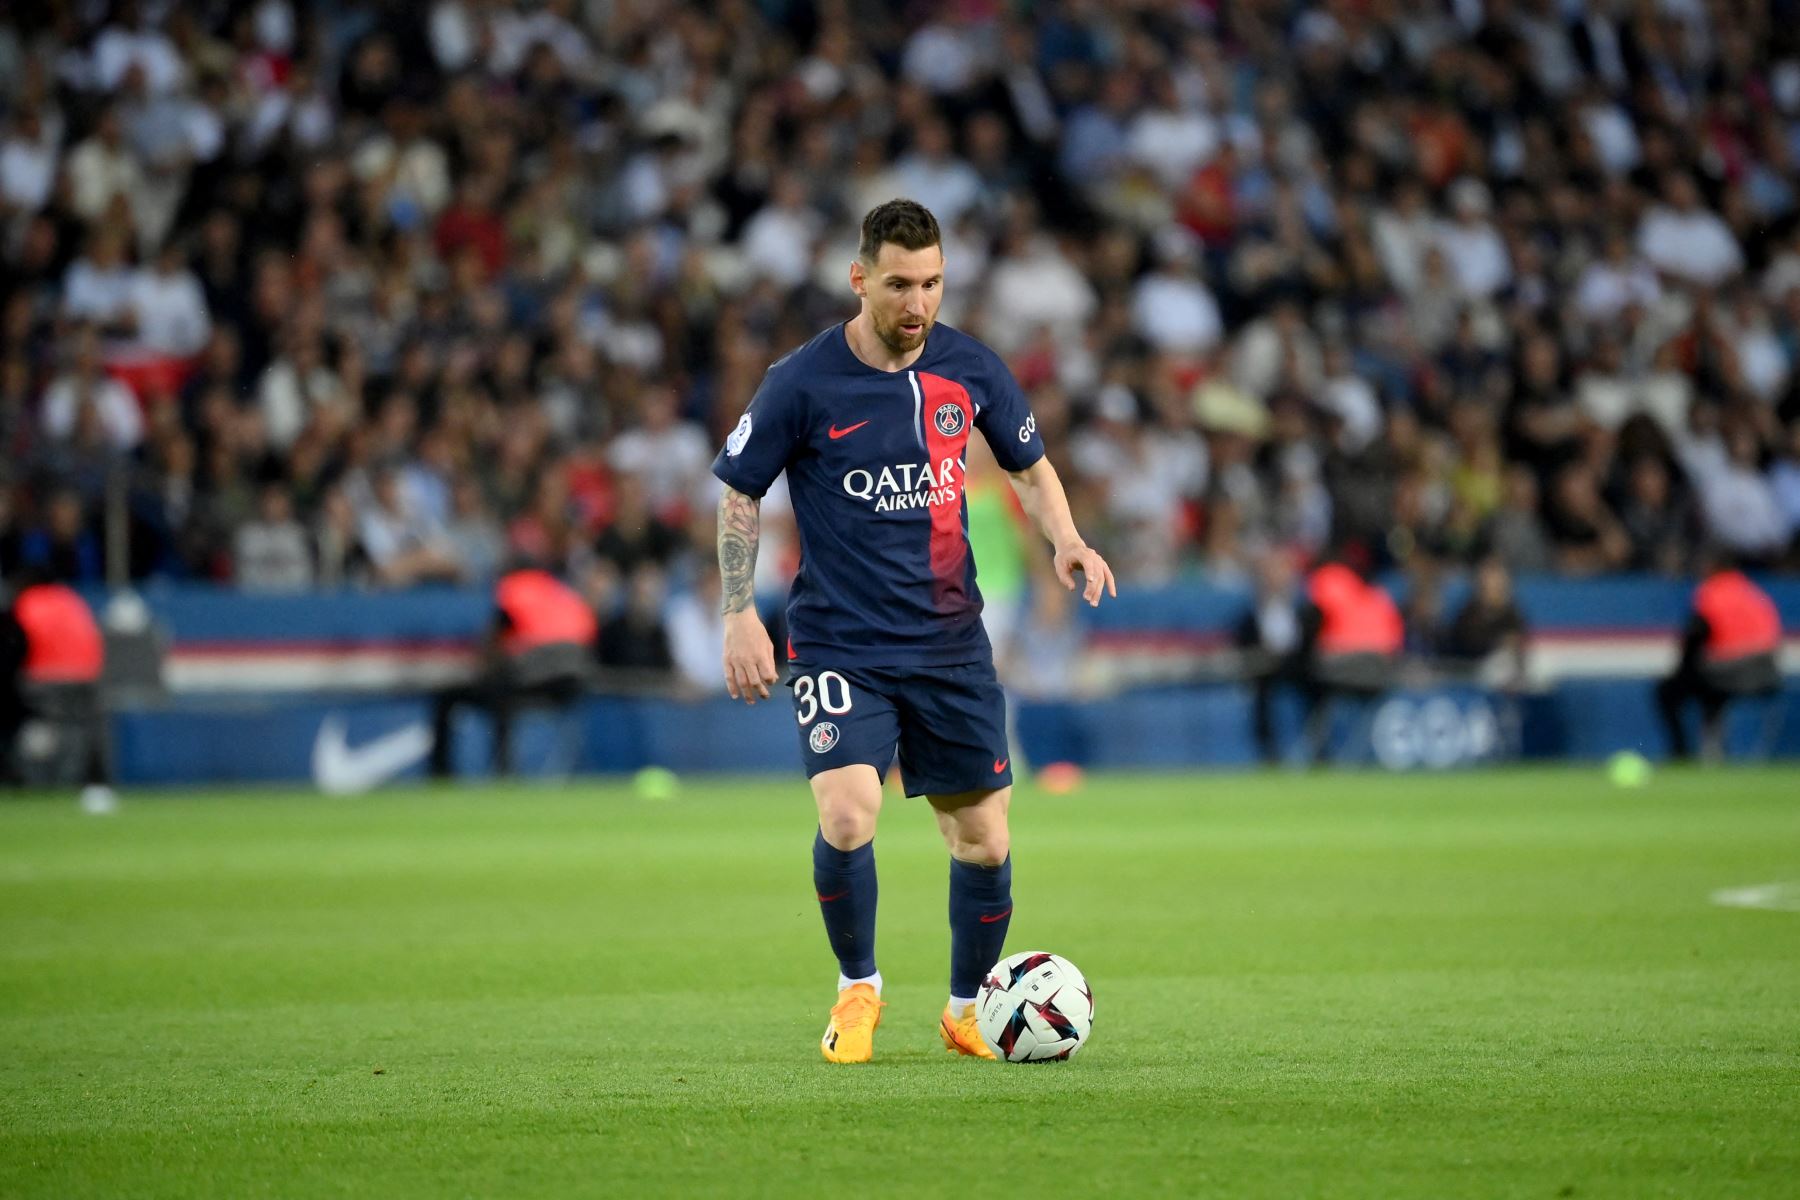 El delantero argentino del Paris Saint-Germain, Lionel Messi, corre con el balón durante el partido de fútbol de la L1 francesa entre el Paris Saint-Germain  y el Clermont Foot 63 en el estadio Parc des Princes de París.
Foto: AFP